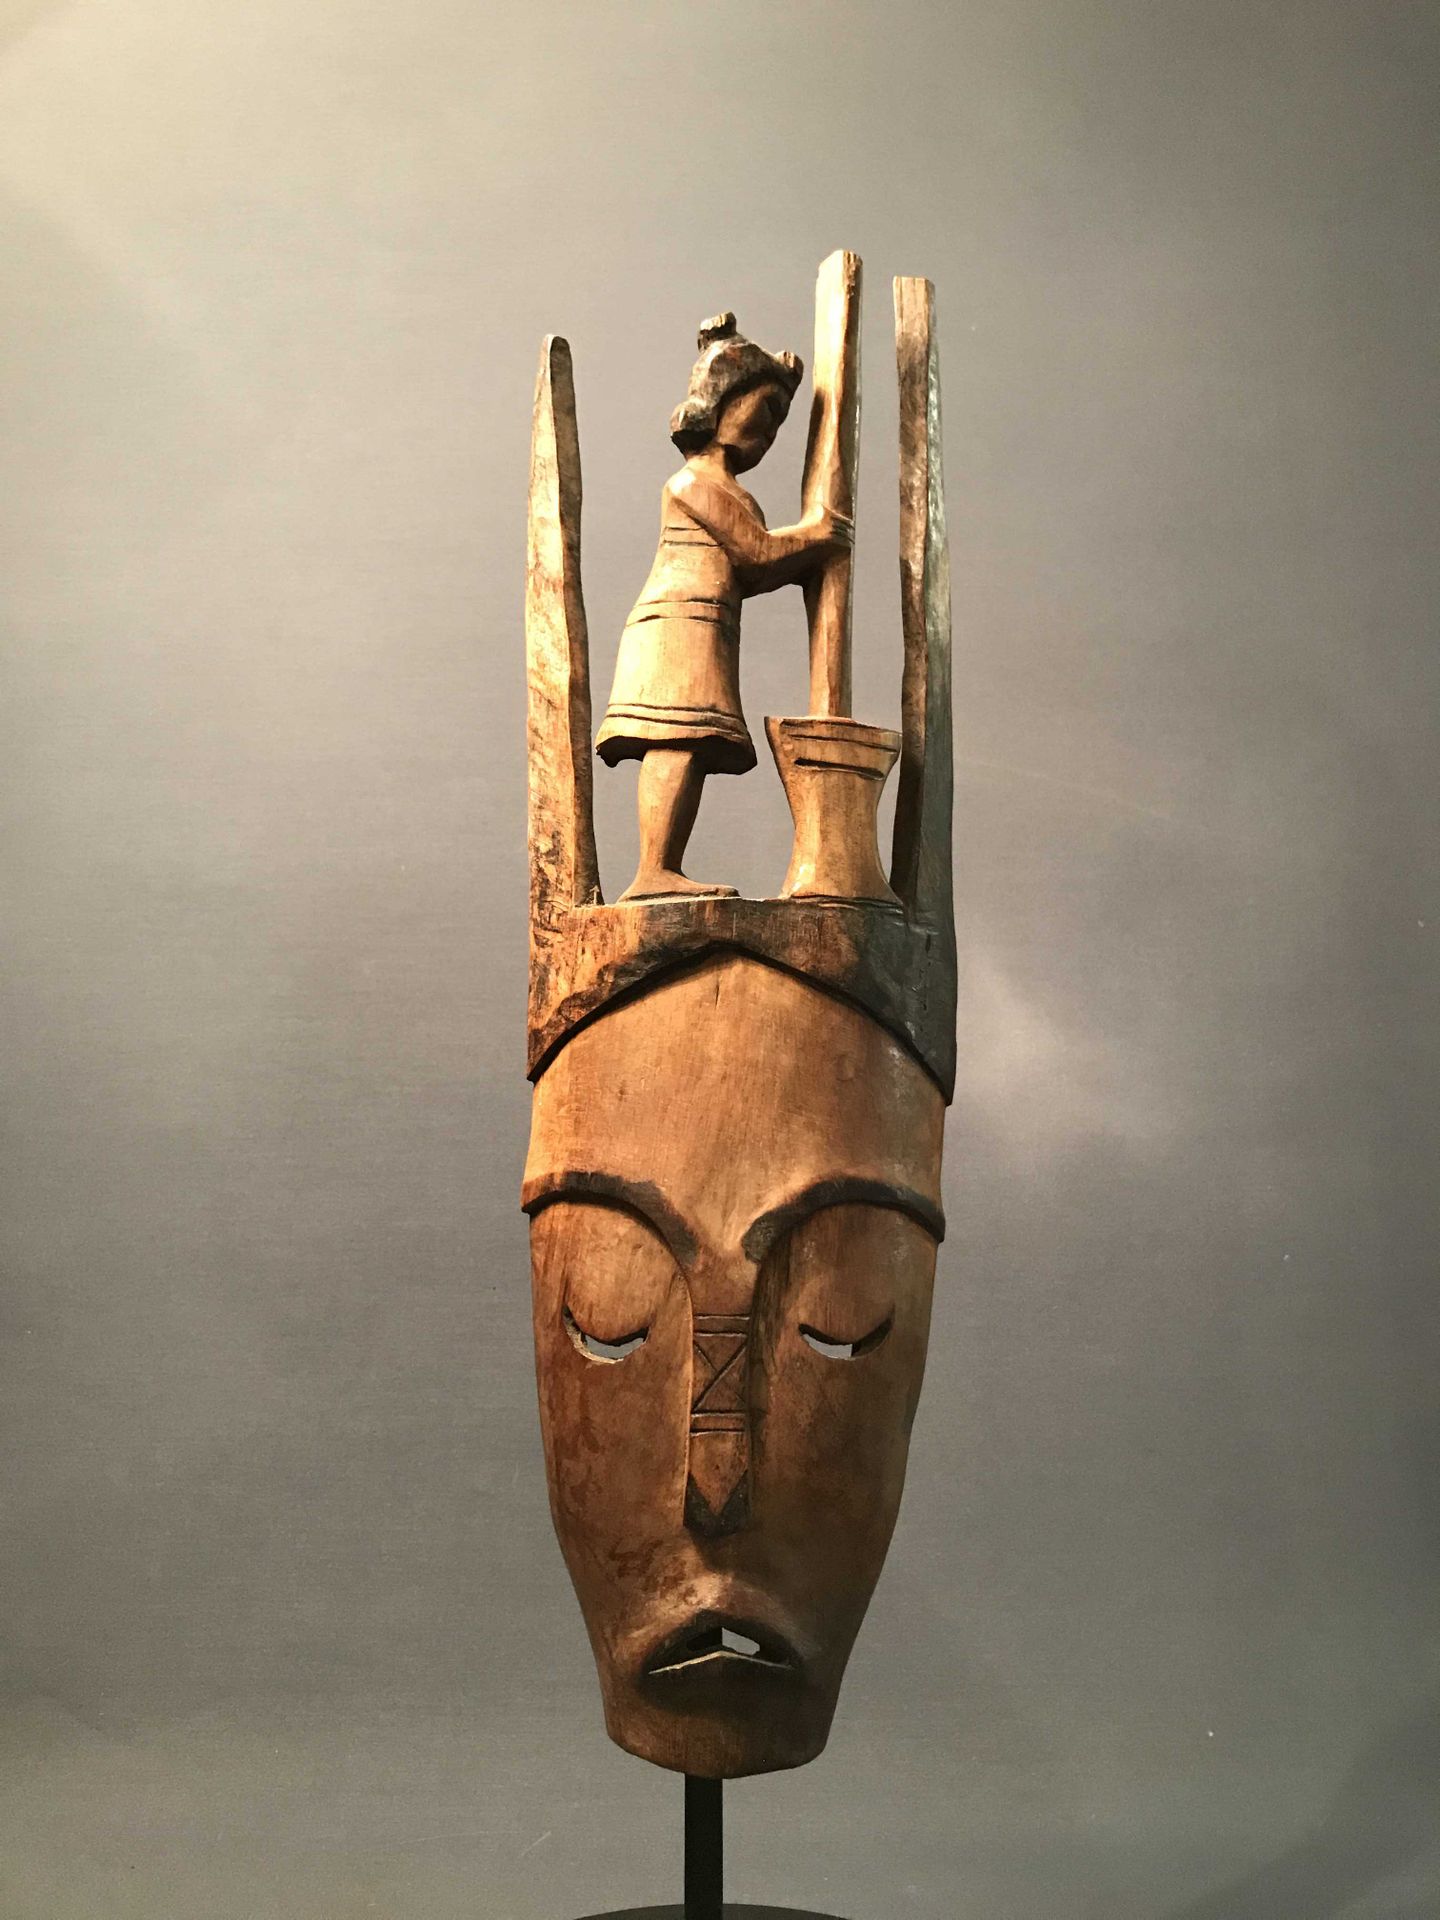 Null 小屋面具 
萨卡拉夫族 - 萨卡拉瓦 - 马达加斯加
木头 
20世纪中叶
优秀
50 x 6 x 15厘米 
私人收藏 马达加斯加艺术 
马达加斯加&hellip;